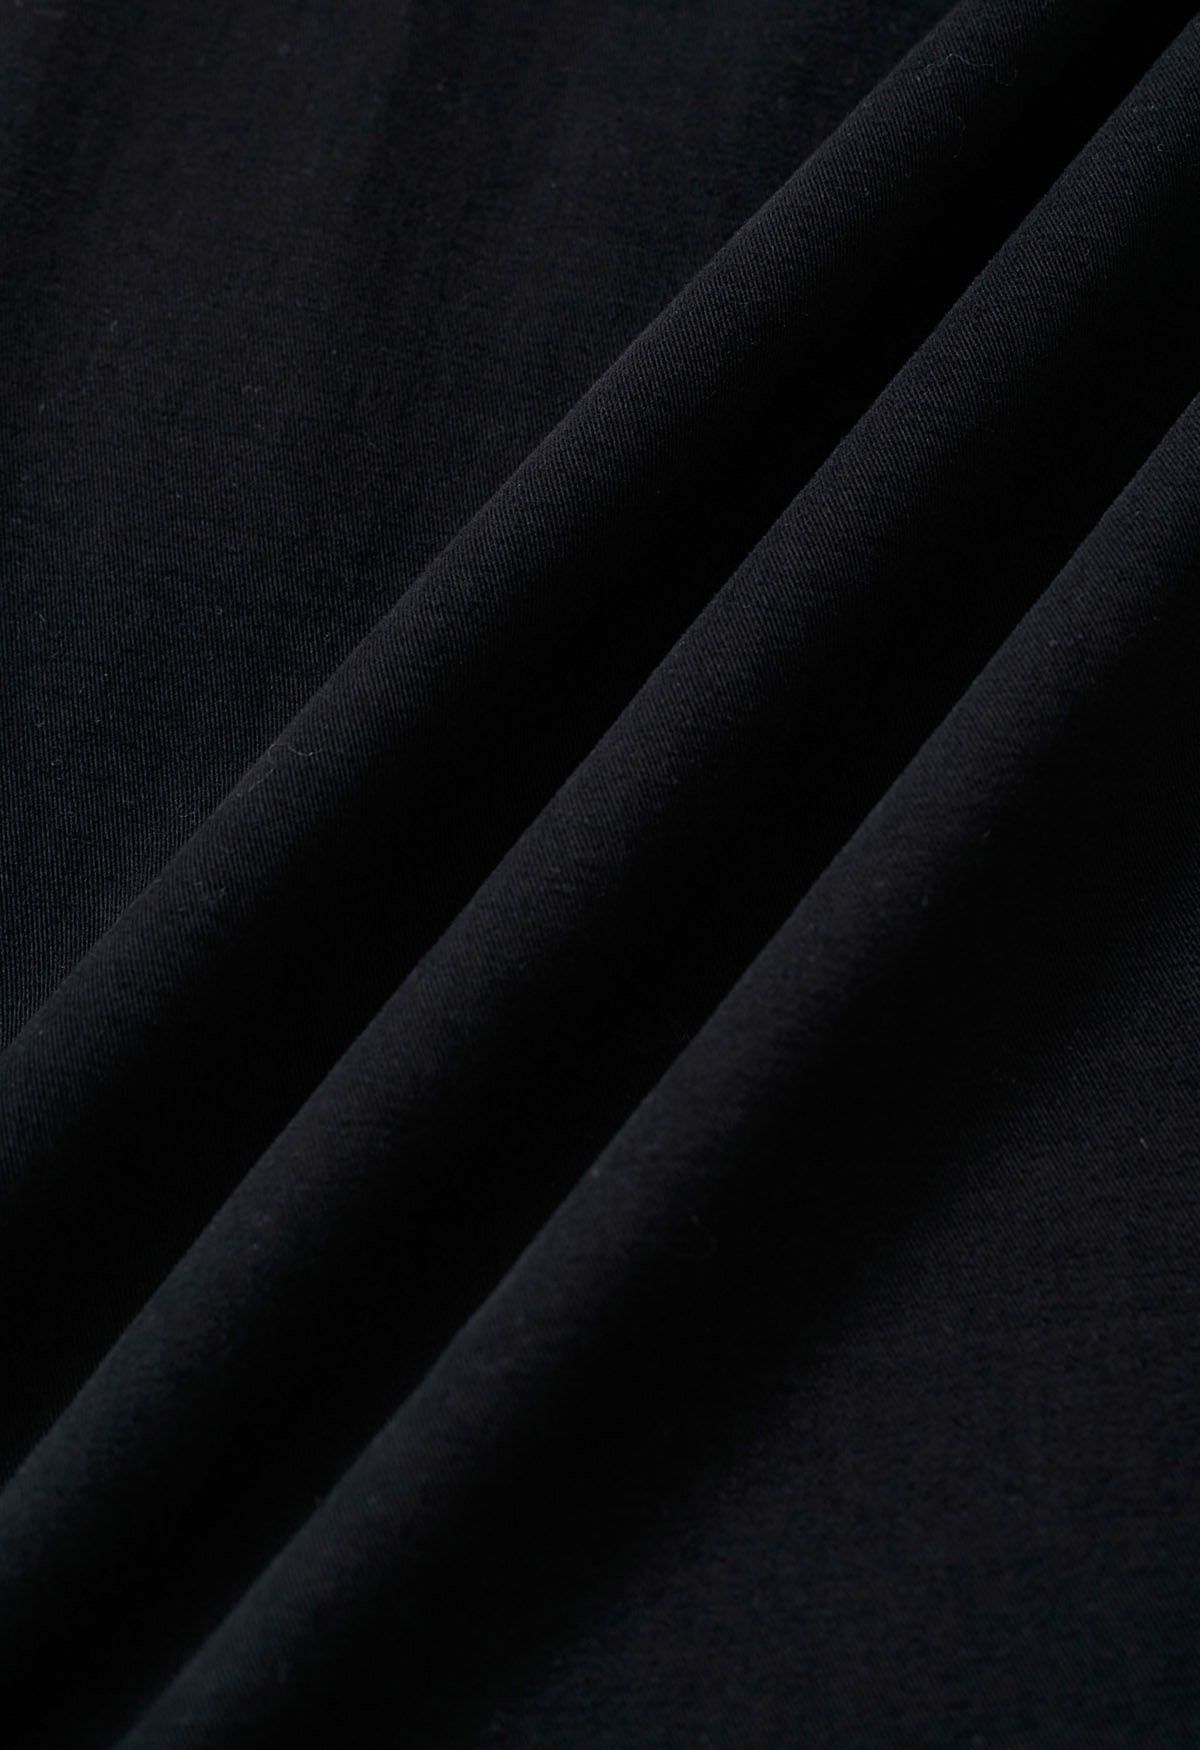 Cómodos pantalones anchos de algodón en negro